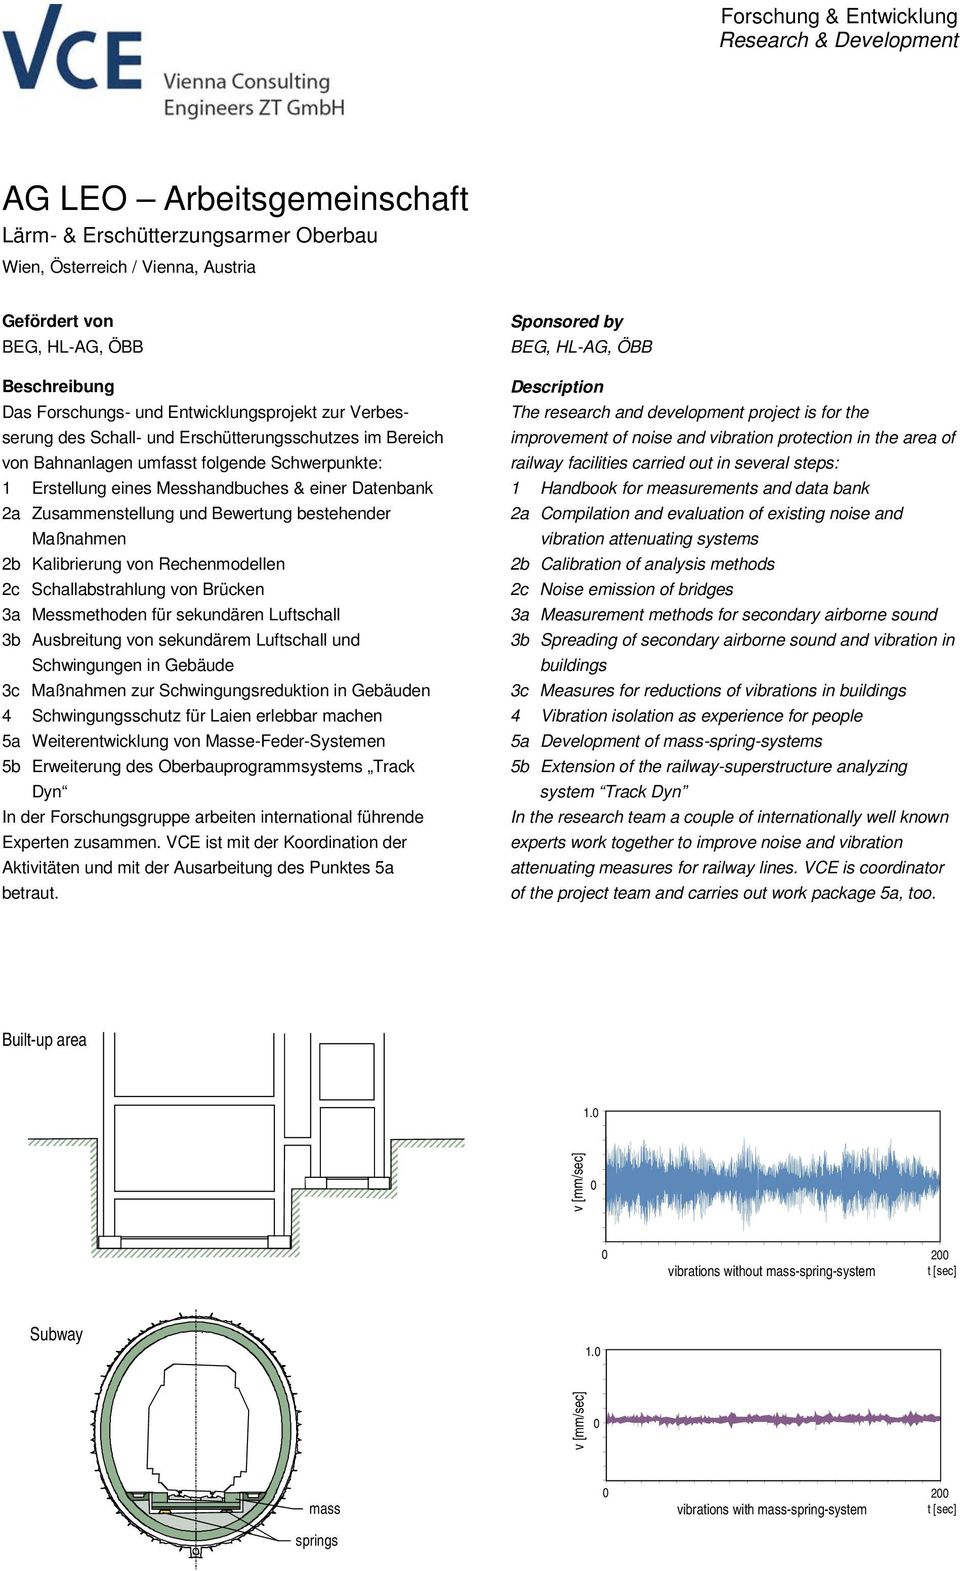 Zusammenstellung und Bewertung bestehender Maßnahmen 2b Kalibrierung von Rechenmodellen 2c Schallabstrahlung von Brücken 3a Messmethoden für sekundären Luftschall 3b Ausbreitung von sekundärem